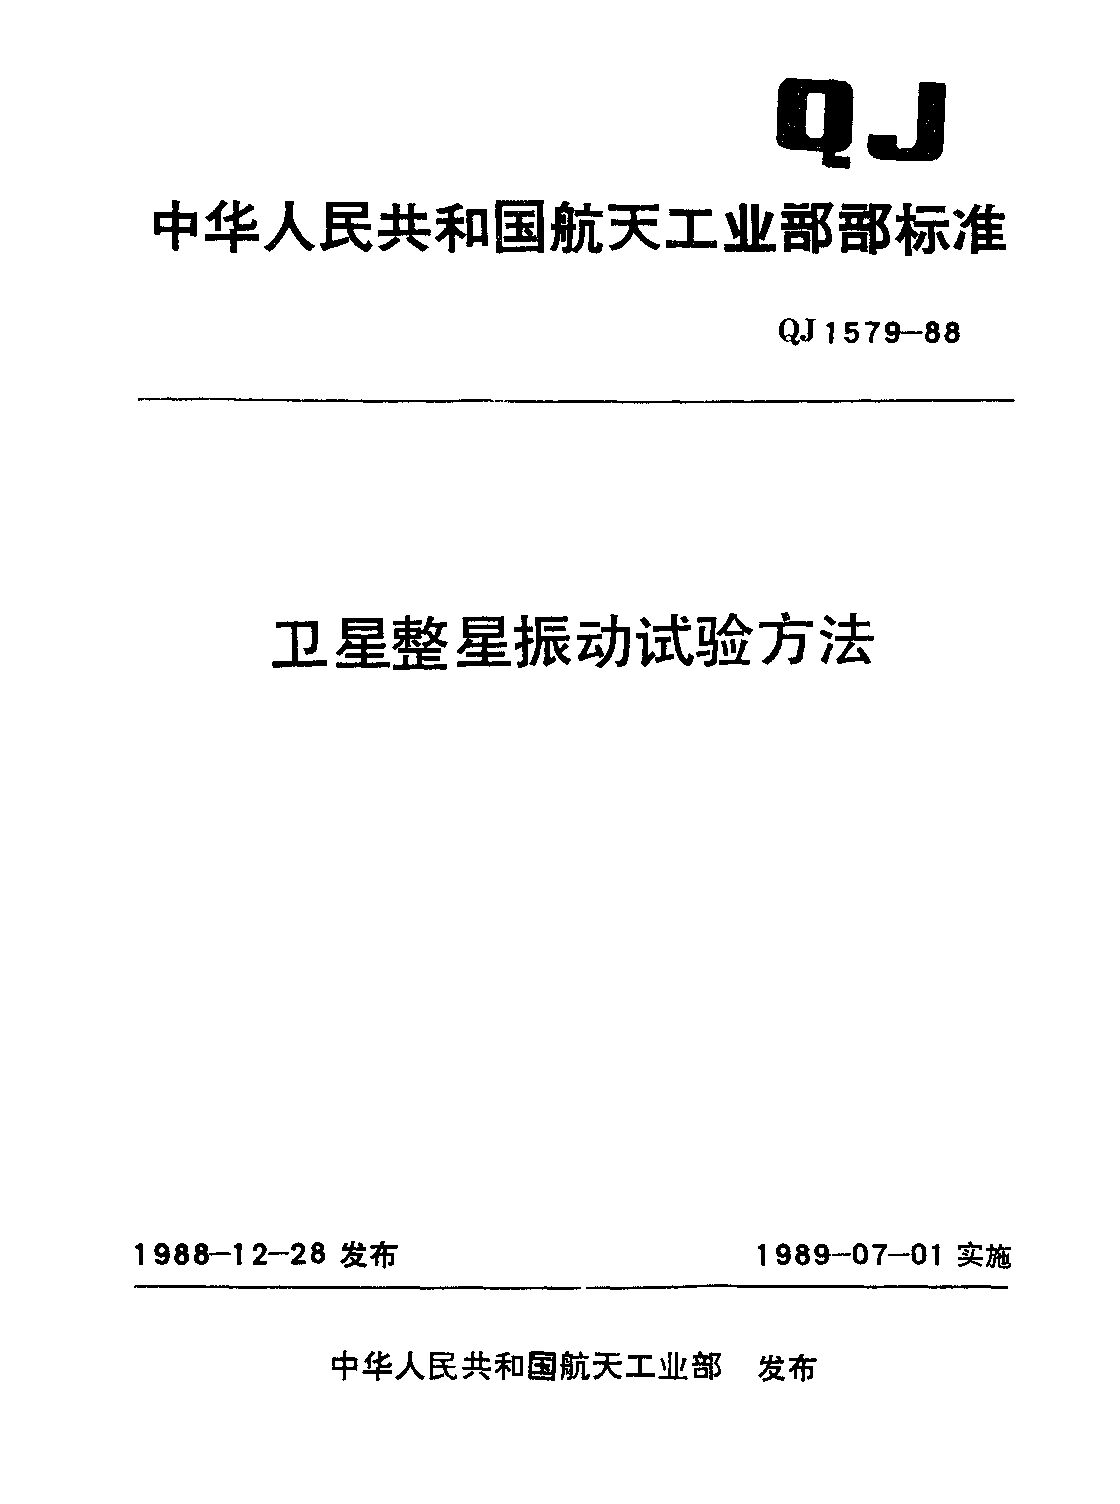 QJ 1579-1988封面图